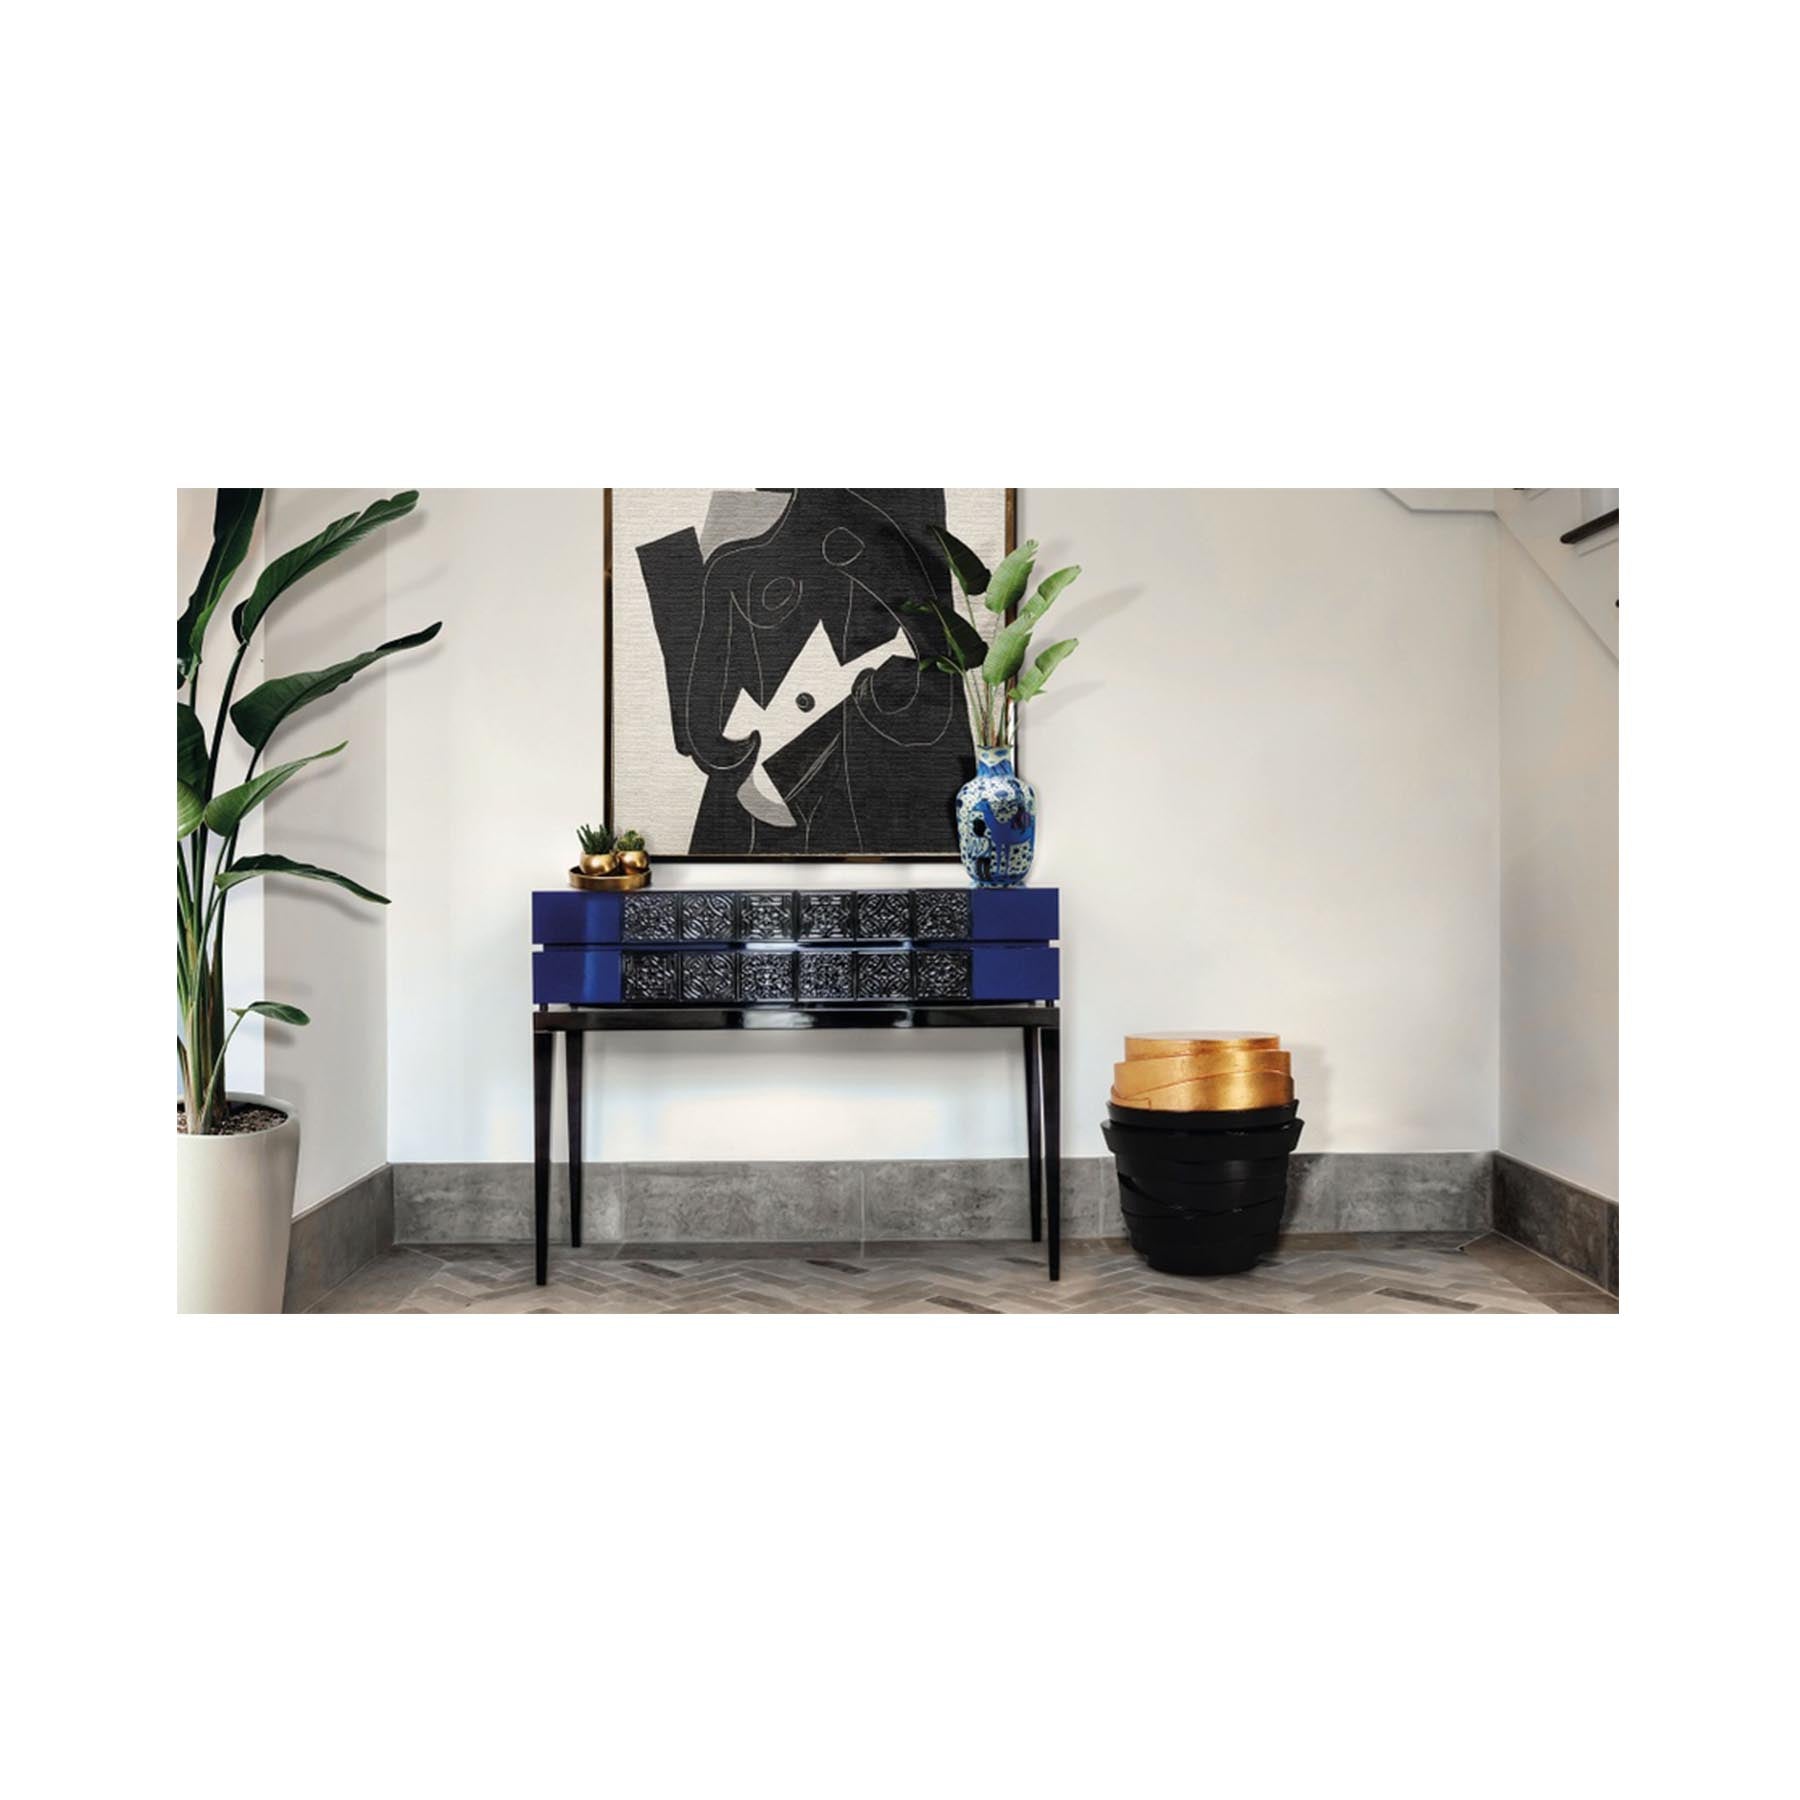 VIRTUOSO - CONSOLE | Modern Furniture + Decor